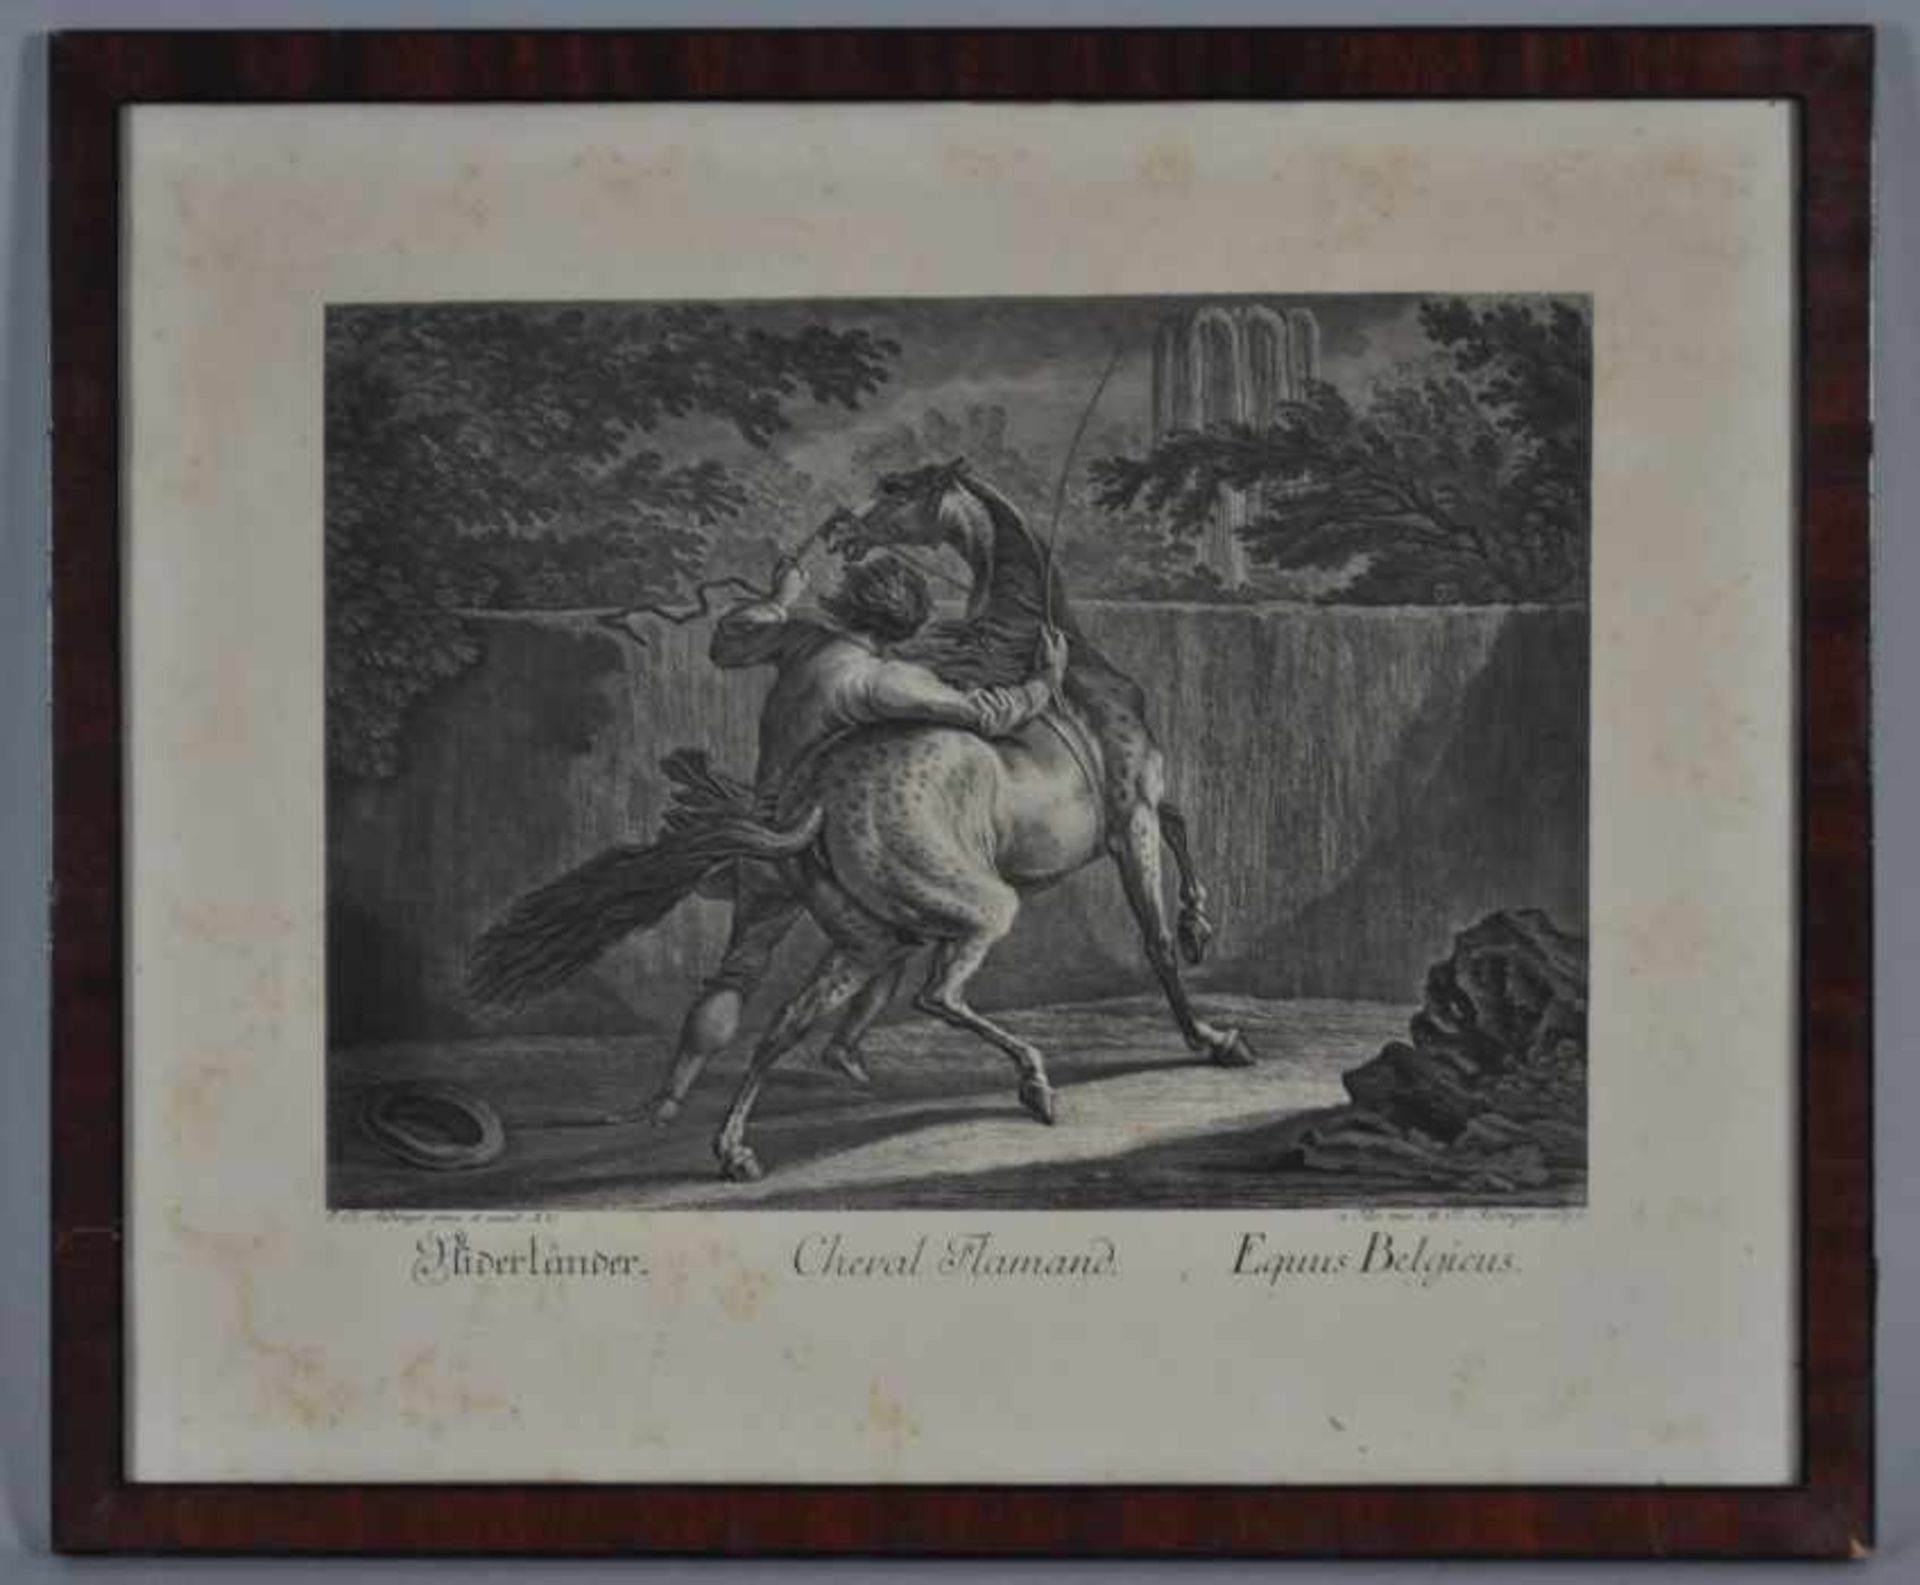 PFERDEDRESSUR "Niderländer. Cheval Flamand. Equus Begicus", Ansicht eines Pferdes bei der Dressur, - Bild 2 aus 3